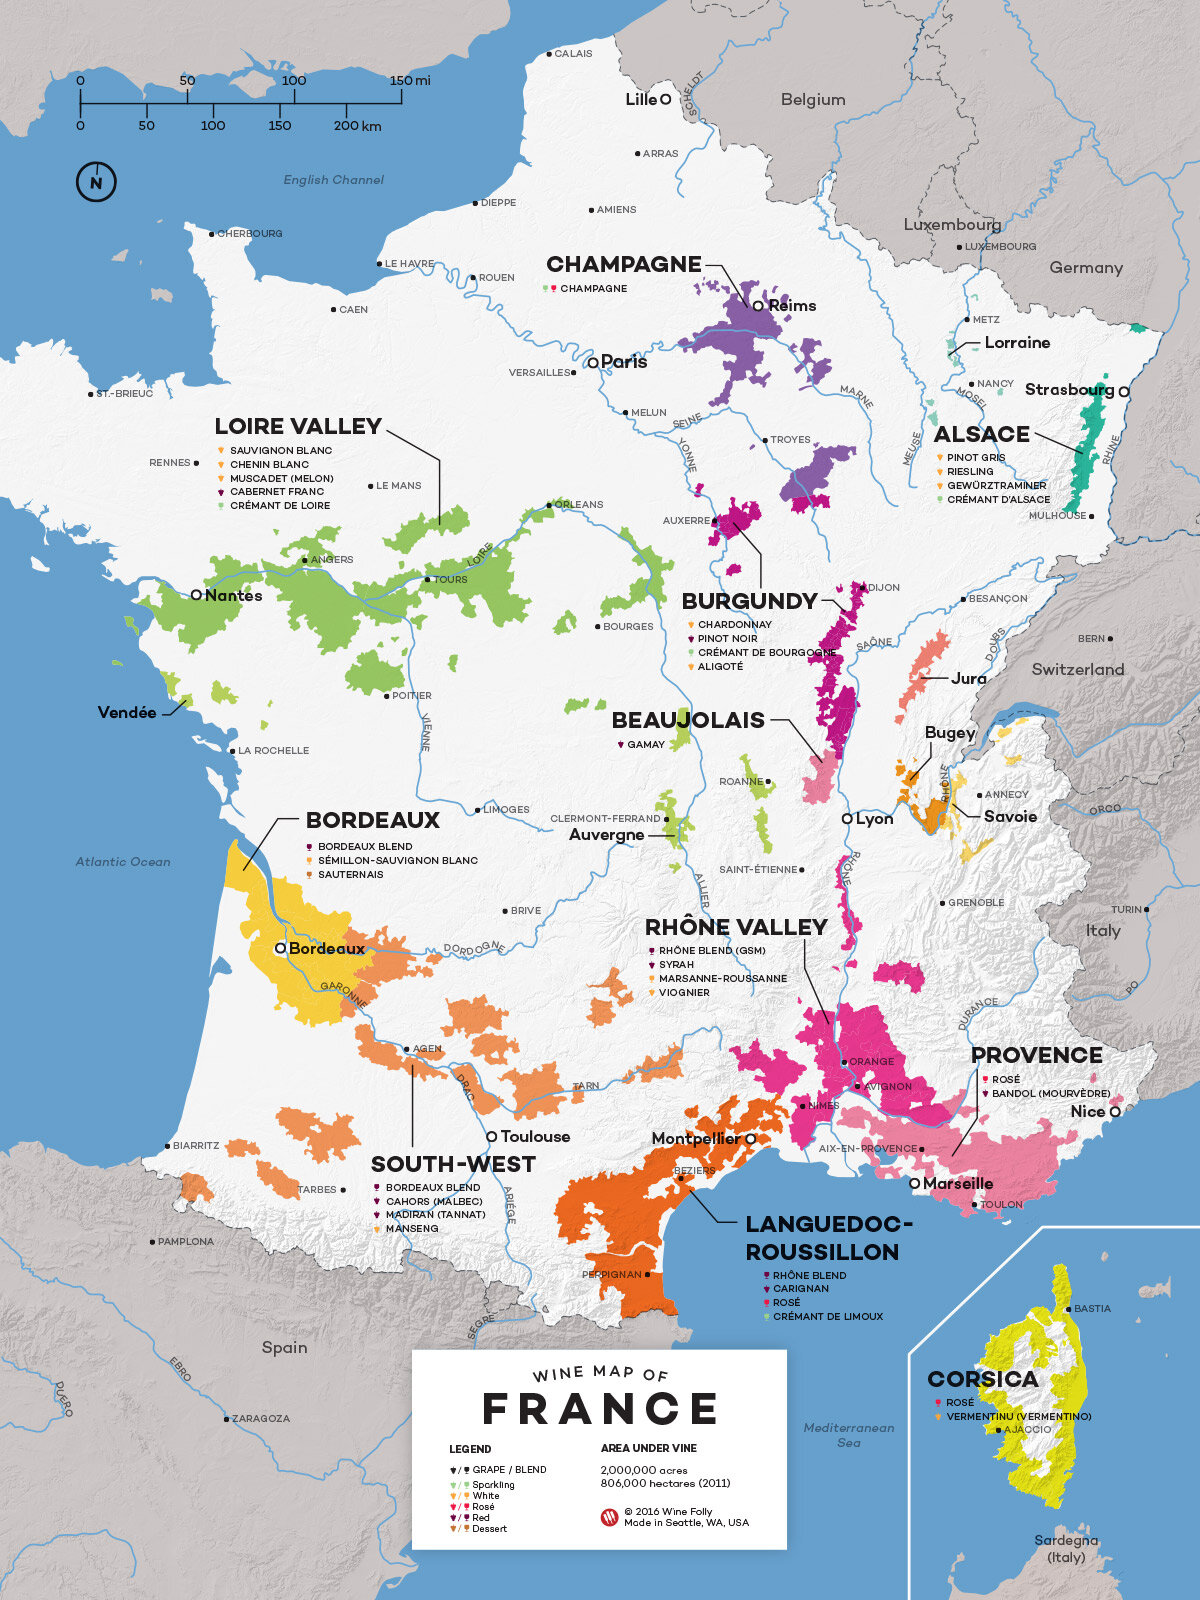 France-Wine-Map-by-WineFolly.jpg